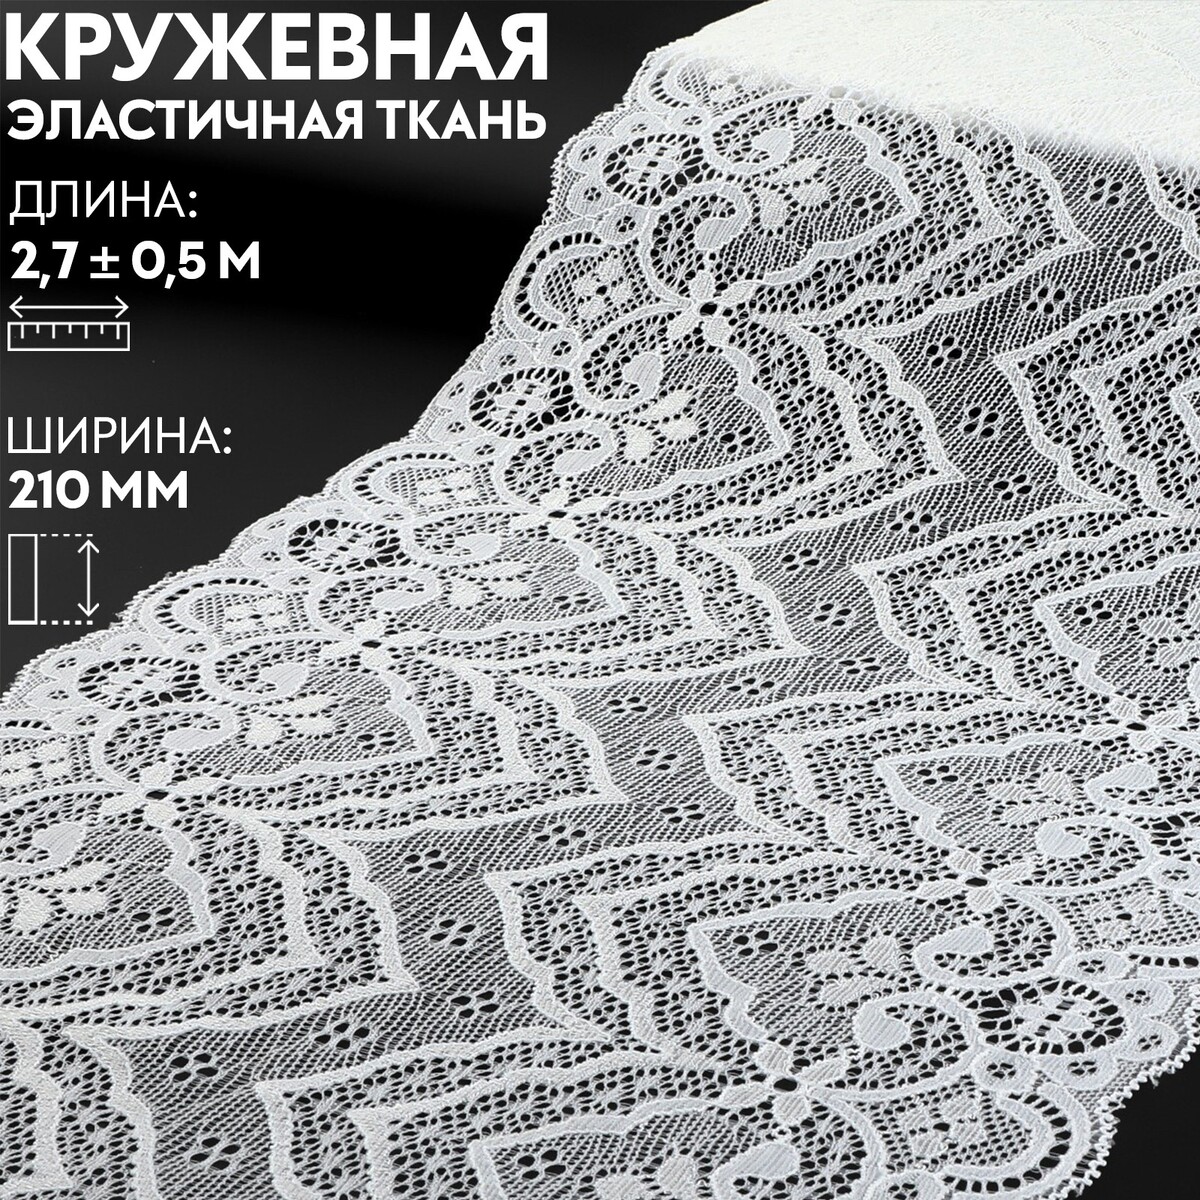 Кружевная эластичная ткань, 210 мм × 2,7 ± 0,5 м, цвет белый